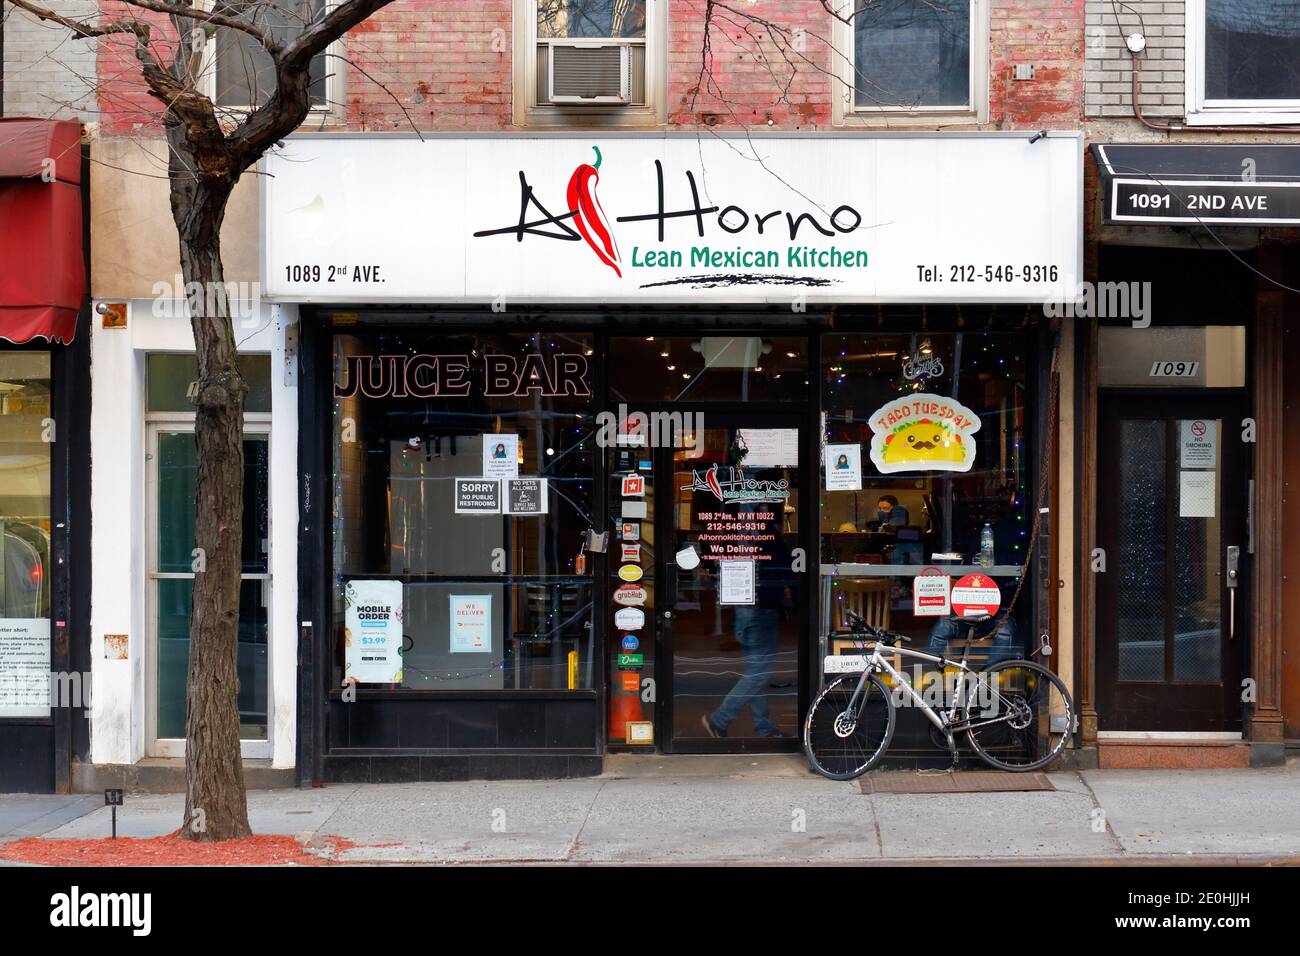 Al Horno Lean Mexican Kitchen, 1089 2nd Ave, New York, NY. Façade extérieure d'une chaîne de restaurants mexicains à Manhattan. Banque D'Images